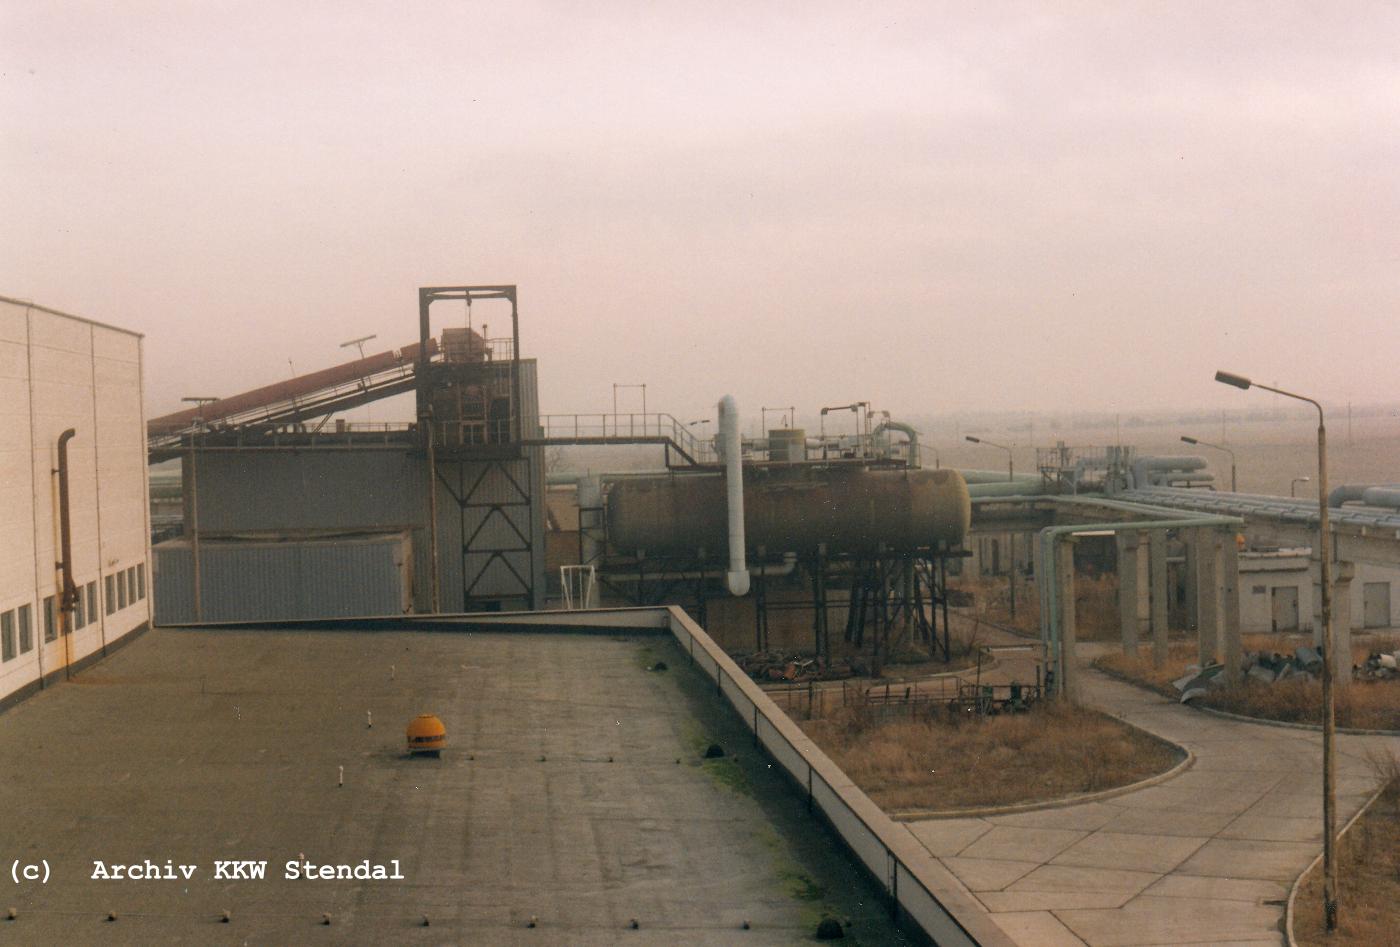  DDR KKW Stendal, Baustelle 1991, Rckbau, Heizwerk 